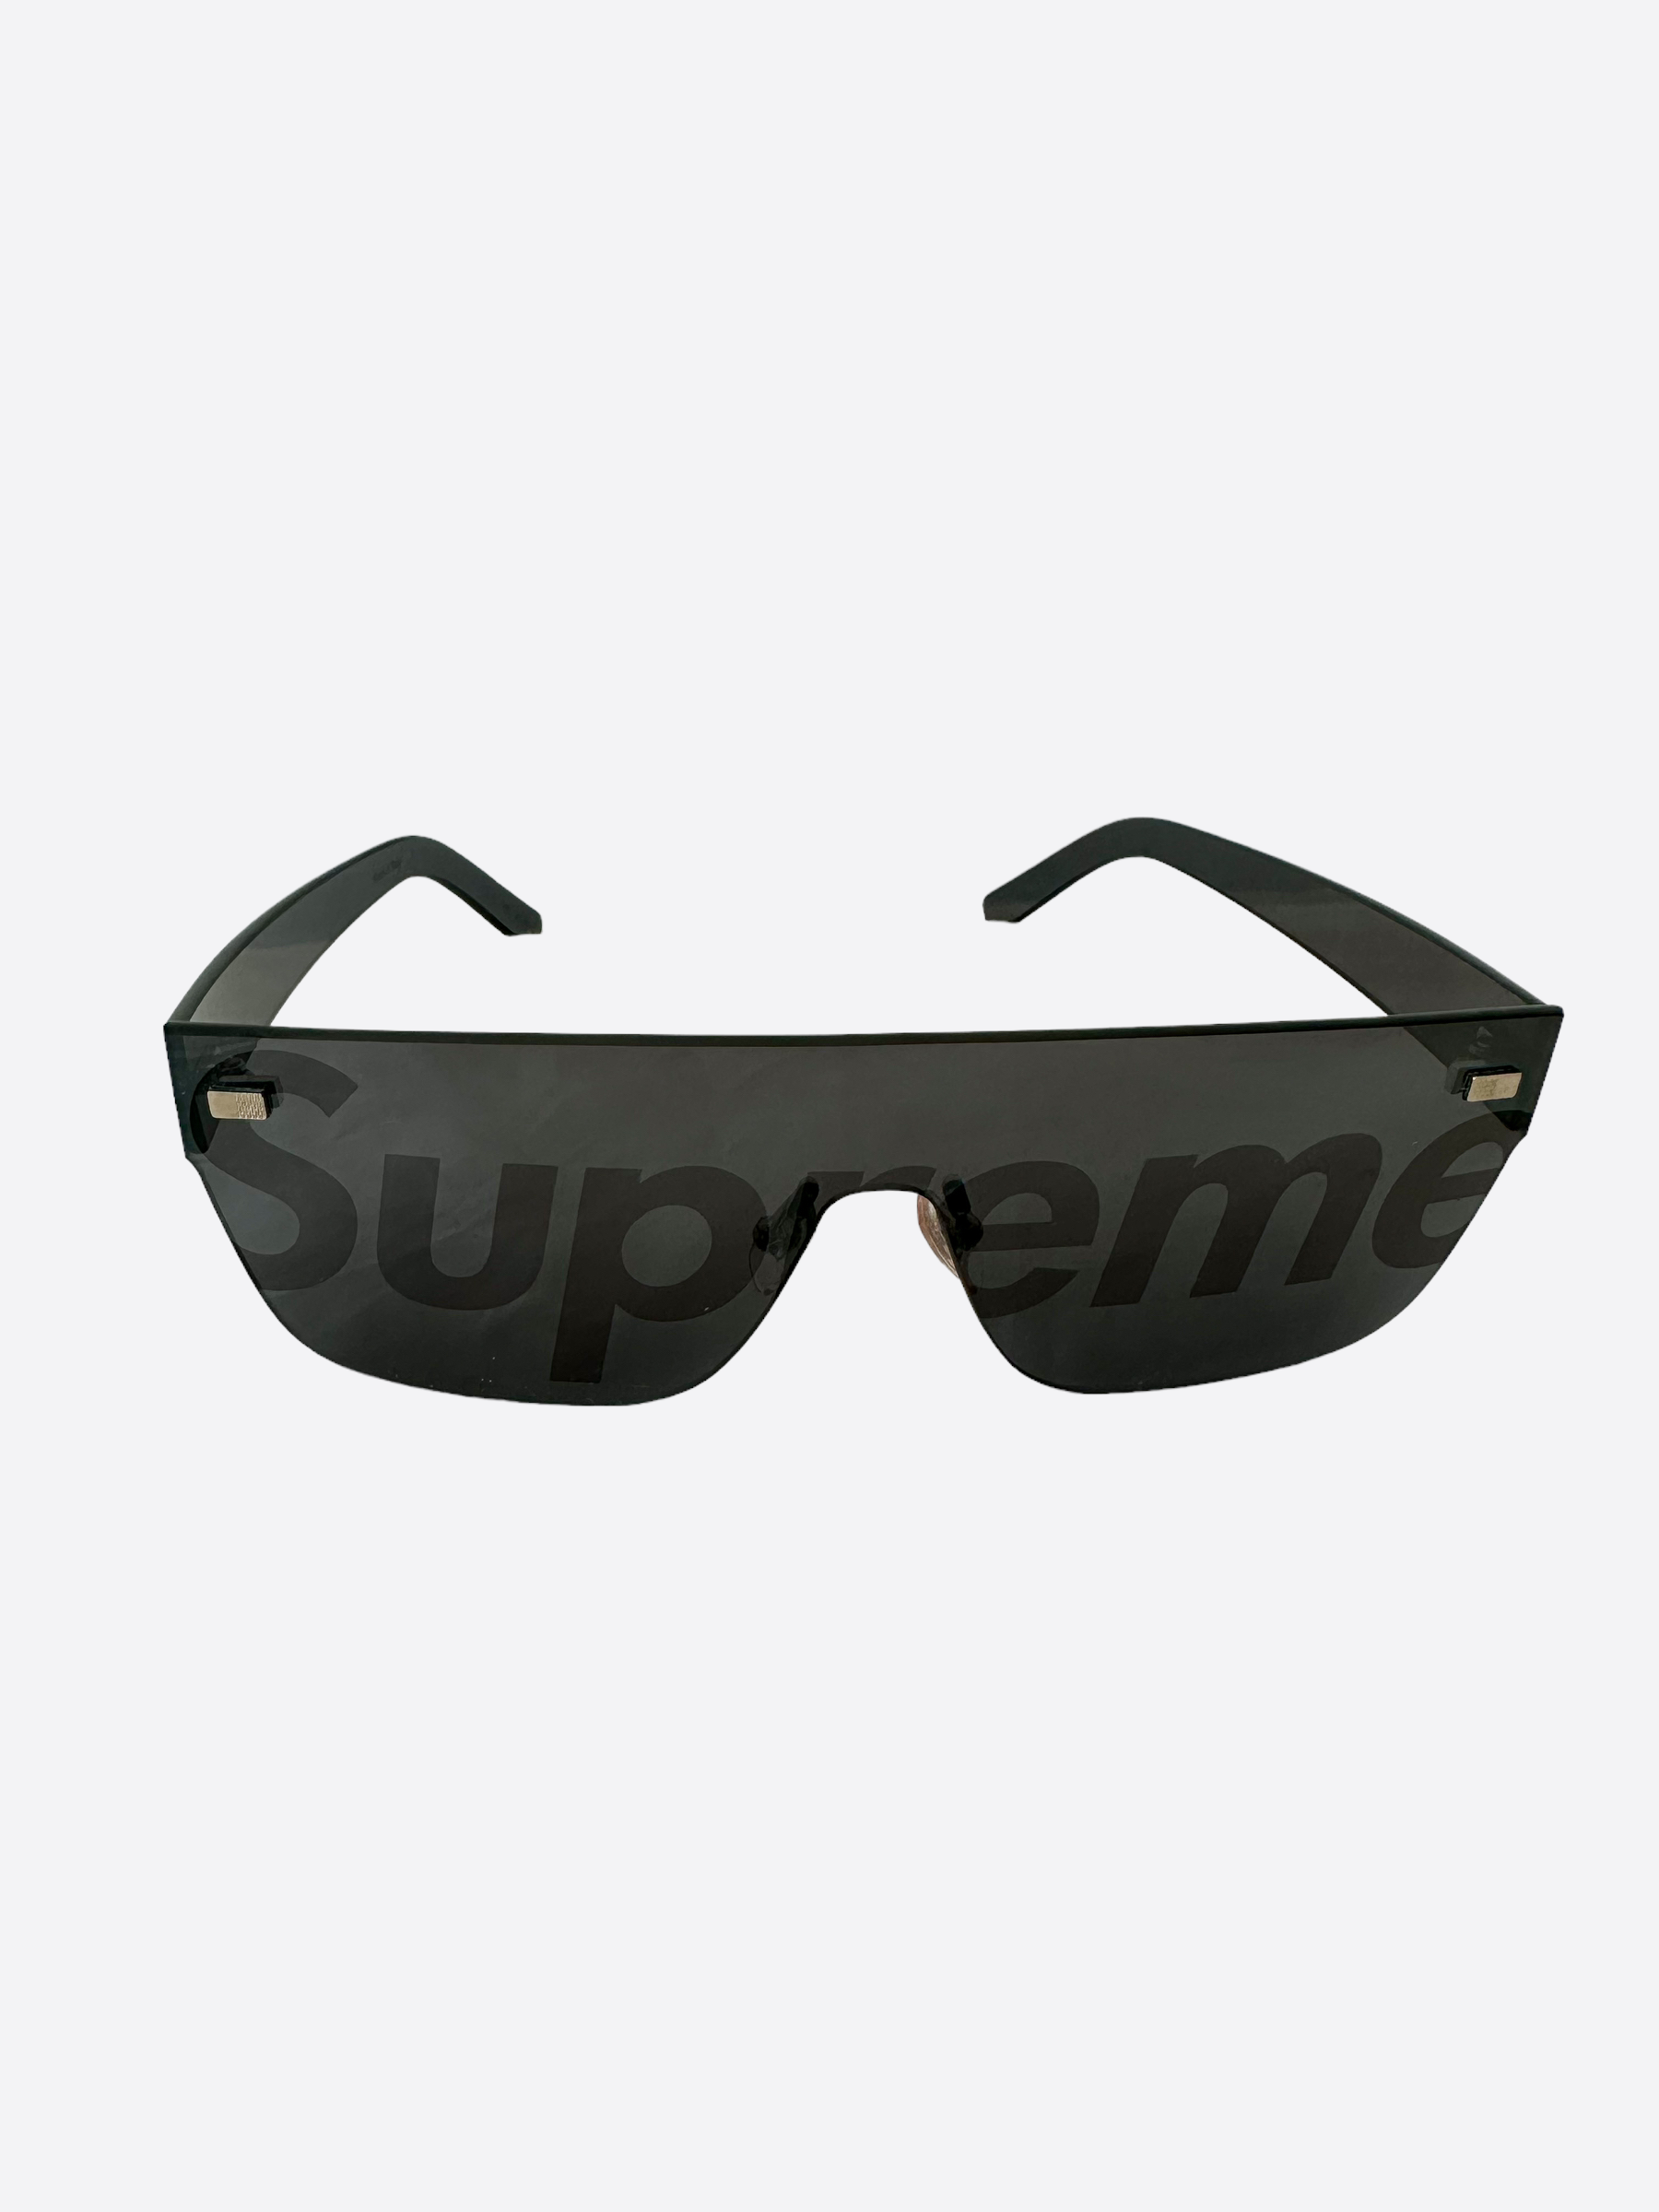 Supreme x Louis Vuitton City Mask SP Sunglasses Black Men's - SS17